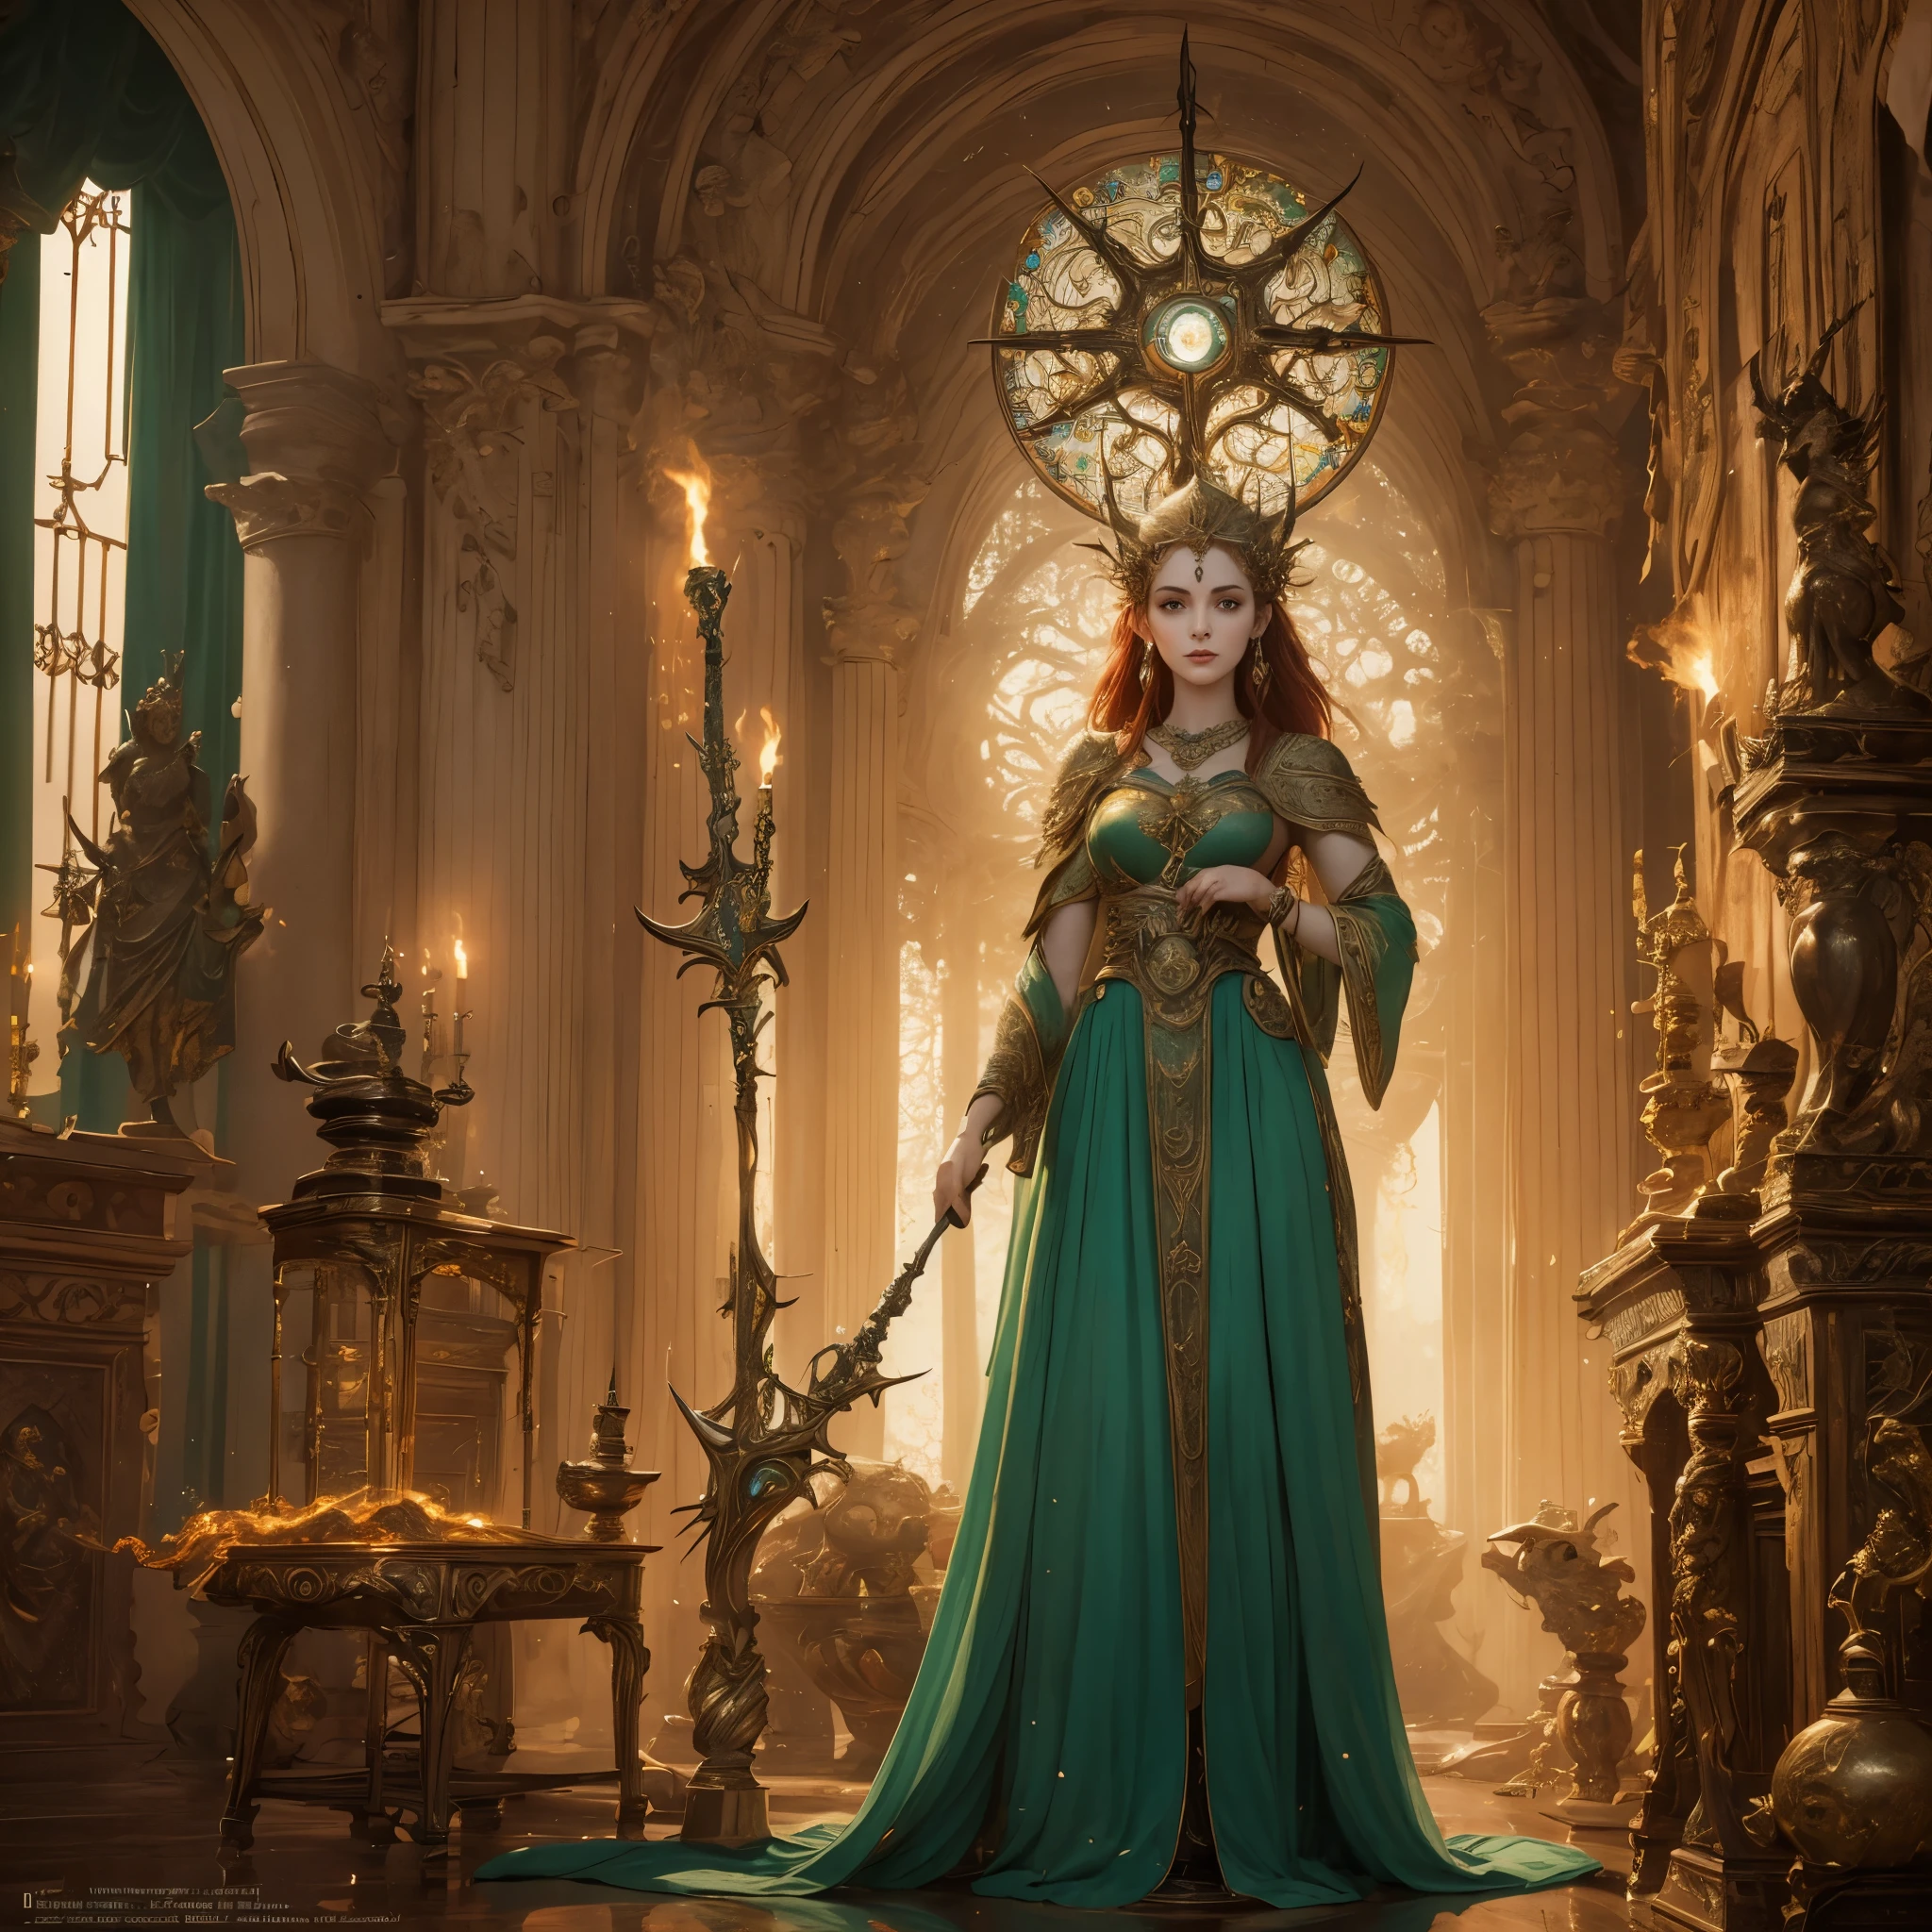 Brigid, la venerada diosa irlandesa, se mantiene alta y radiante en su gloria divina. Es conocida como la diosa de los herreros y las forjas., un símbolo de creatividad y artesanía. Su presencia es cautivadora, imponendo respeto y asombro. Con cabello rojo fuego y penetrantes ojos verdes., ella encarna la esencia de la belleza irlandesa. Vestida con un vestido fluido de color verde vibrante., adornado con intrincados patrones celtas, ella irradia elegancia y gracia. las manos de brigid, a la vez delicado y poderoso, sostener las herramientas de su oficio, un martillo y un yunque, símbolos de su dominio sobre la fragua. La habitación en la que se encuentra está bañada por un cálido resplandor., que emana de las llamas parpadeantes del hogar. Mientras ella mira hacia un